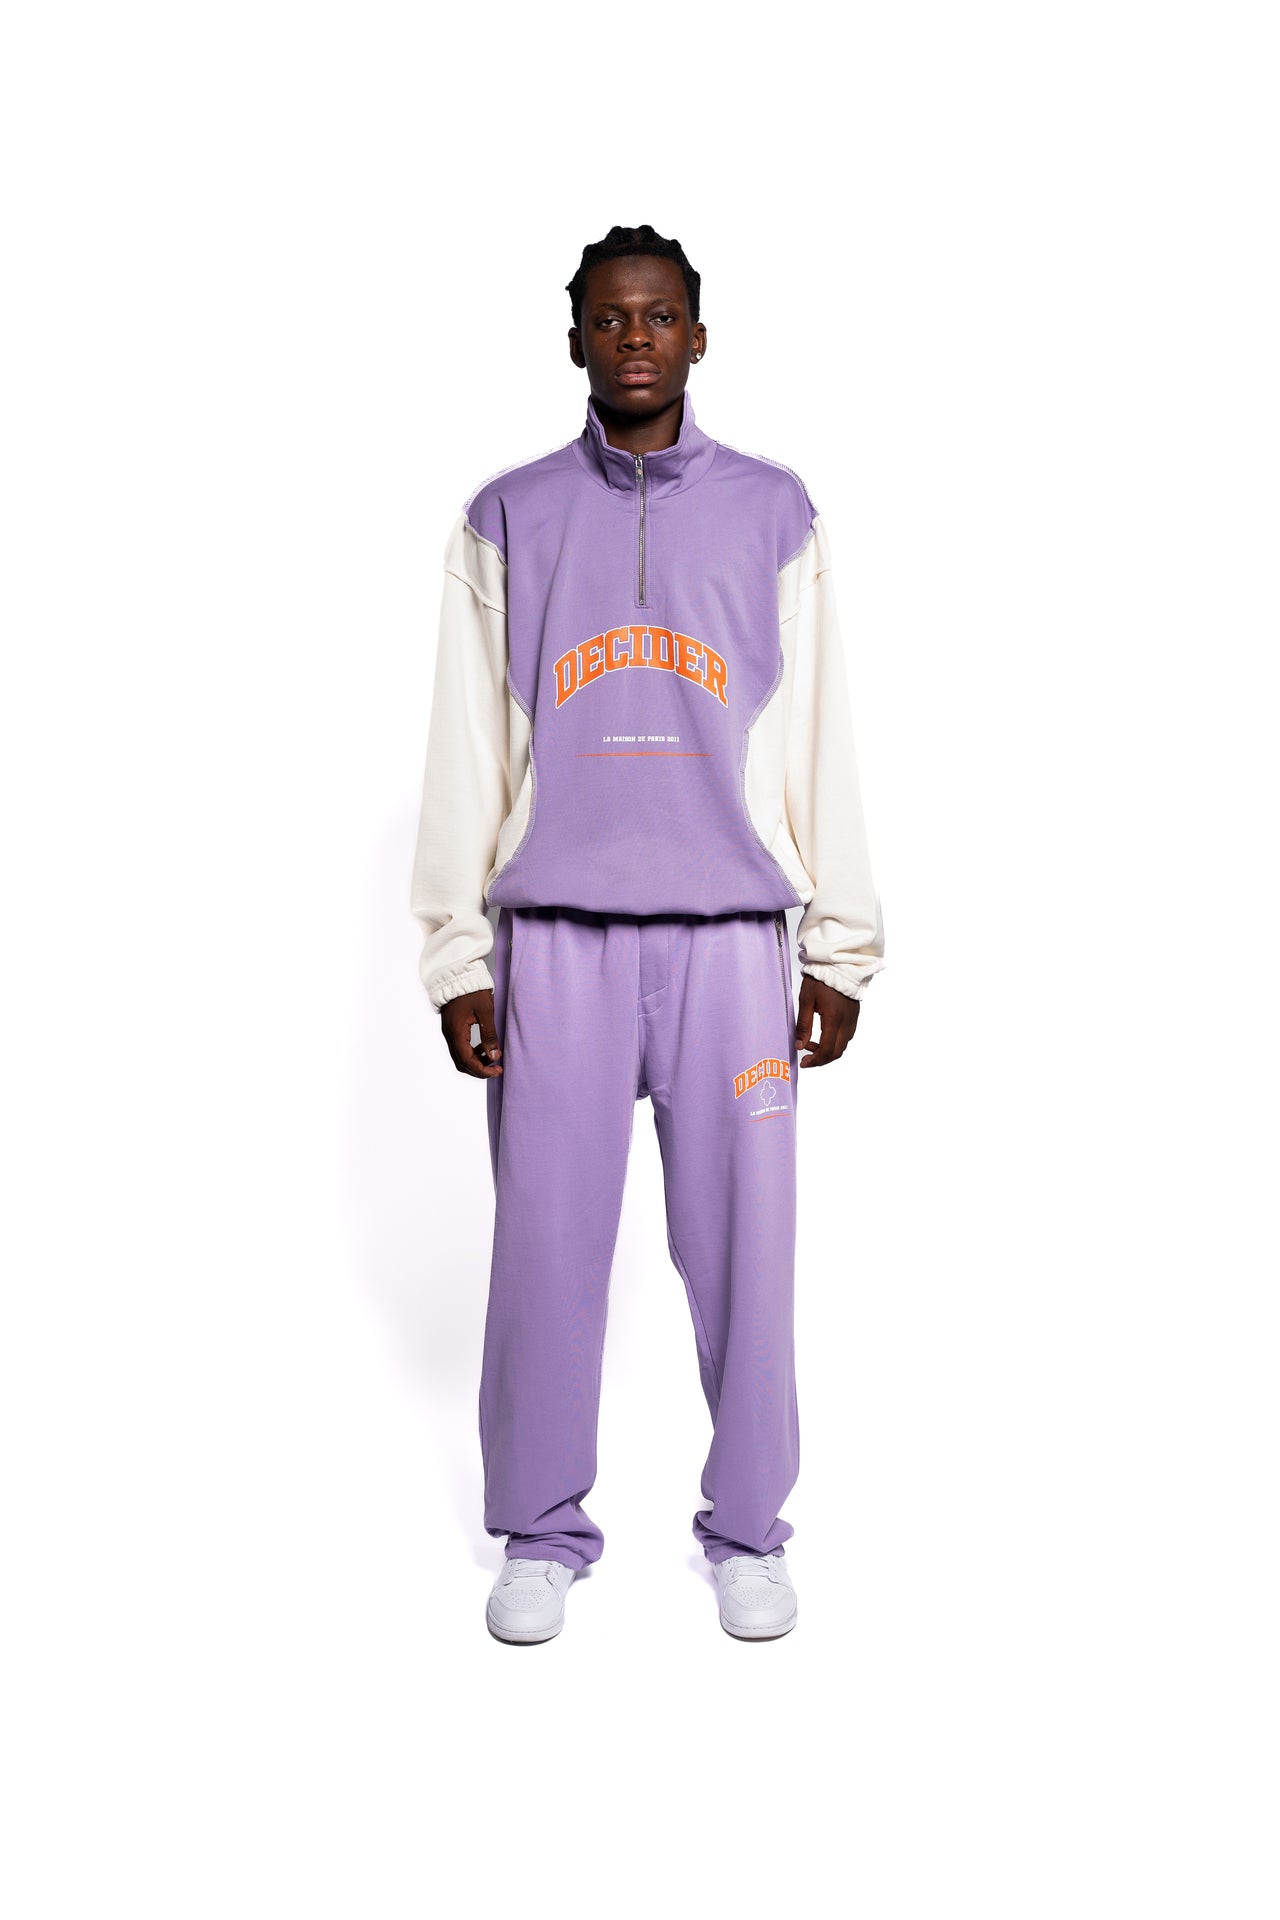 Urbaner Streetwear-Look mit Decider Herren-Set aus lila Hoodie und Jogginghose, mit markantem orangefarbenem Branding, präsentiert von einem männlichen Model.